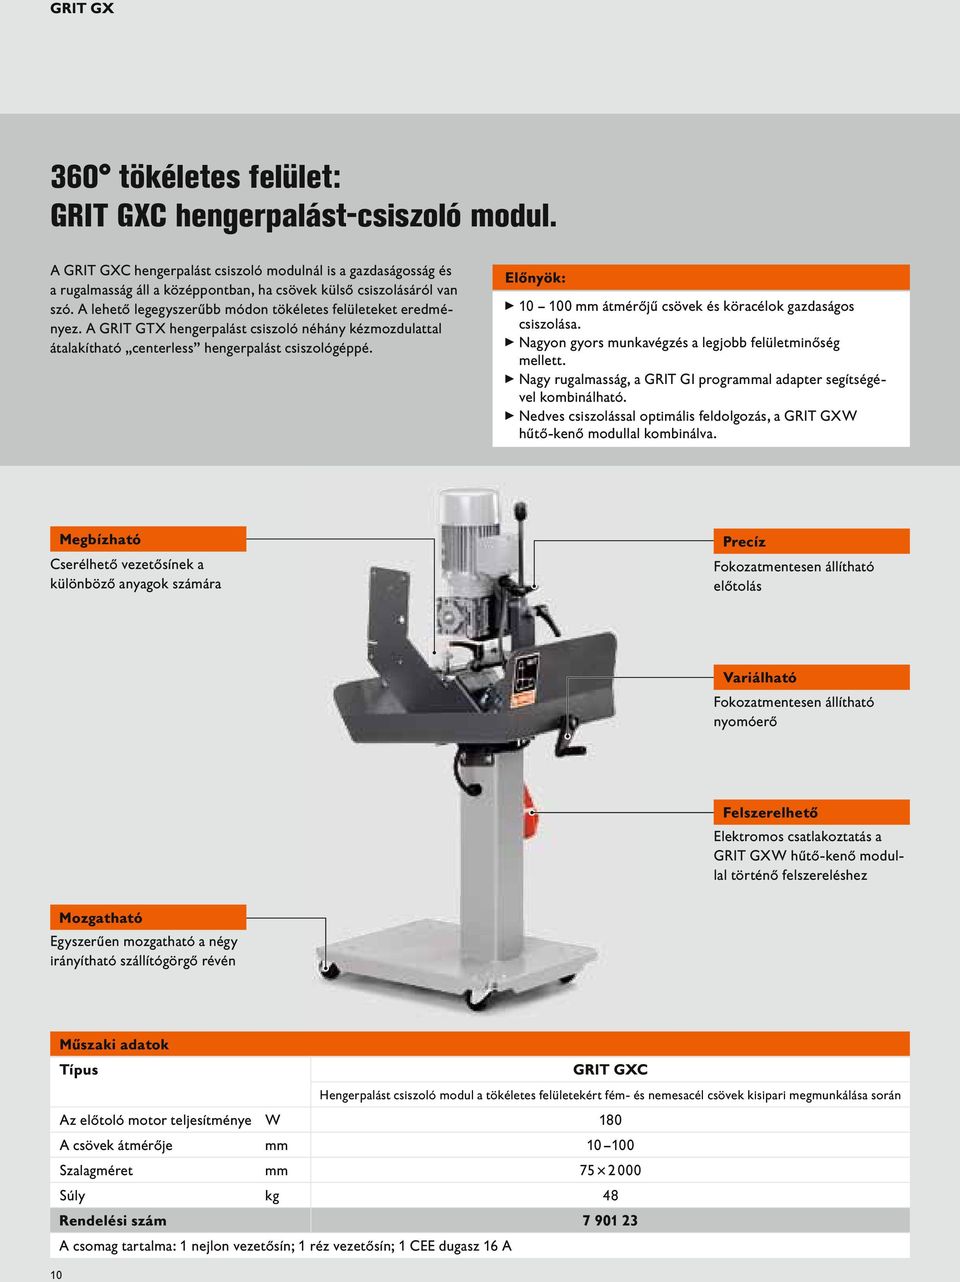 A GRIT GTX hengerpalást csiszoló néhány kézmozdulattal átalakítható centerless hengerpalást csiszológéppé. Előnyök: 10 100 mm átmérőjű csövek és köracélok gazdaságos csiszolása.